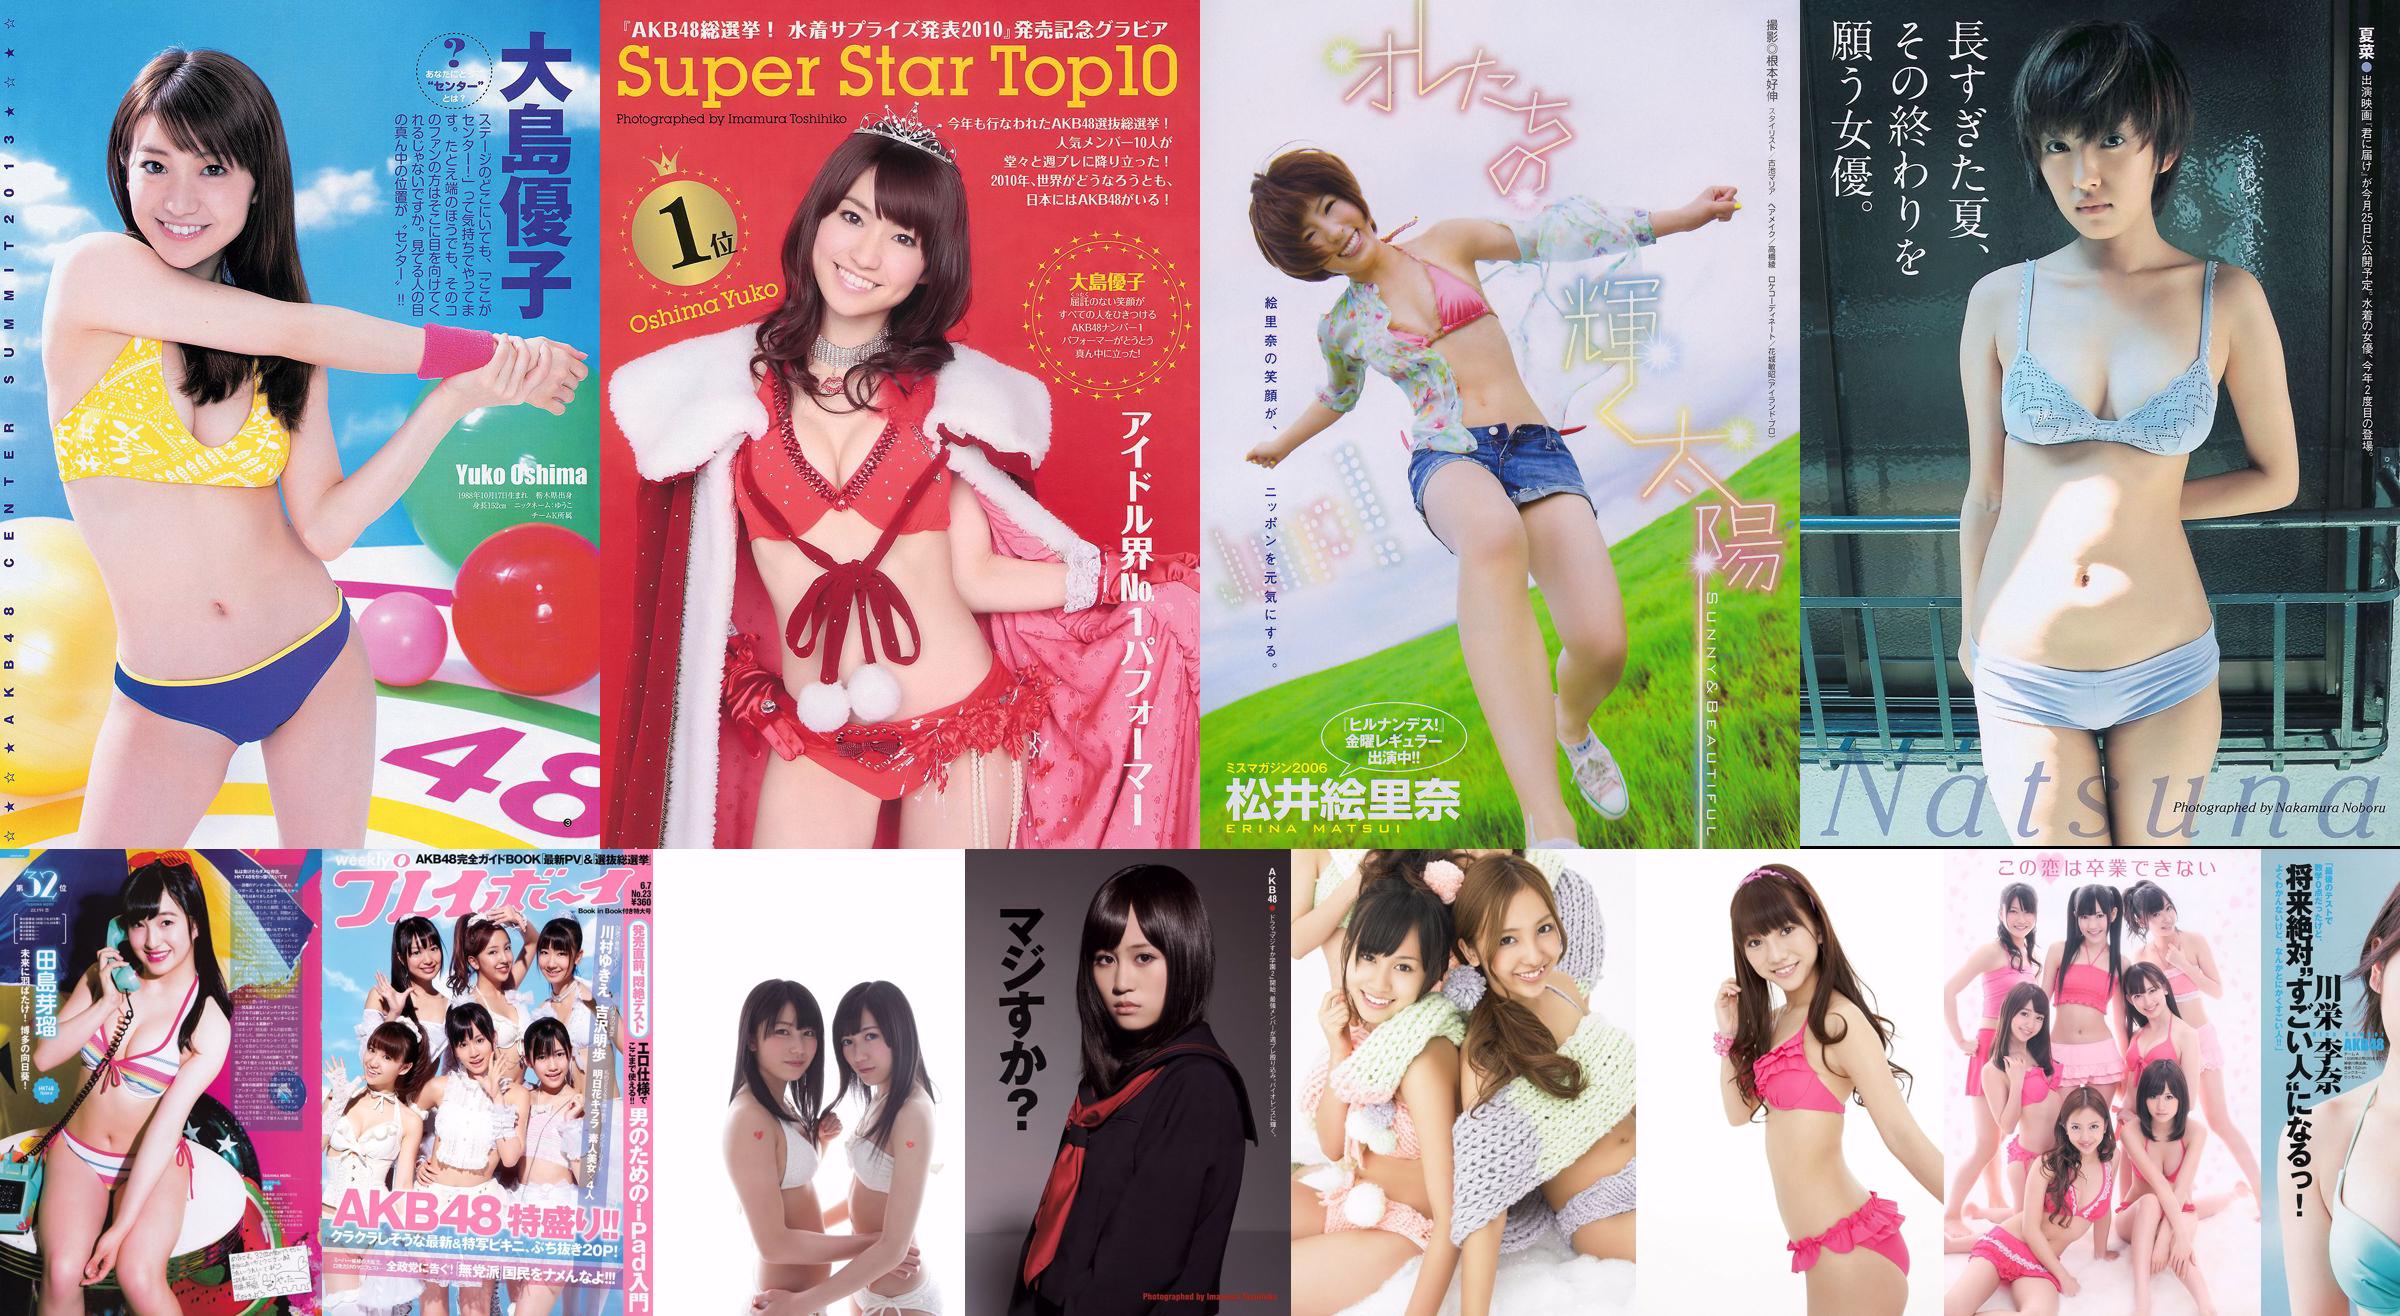 [Young Magazine] AKB48 Risa Yoshiki Erina Matsui 2011 No.26 Photograph No.471f77 หน้า 2